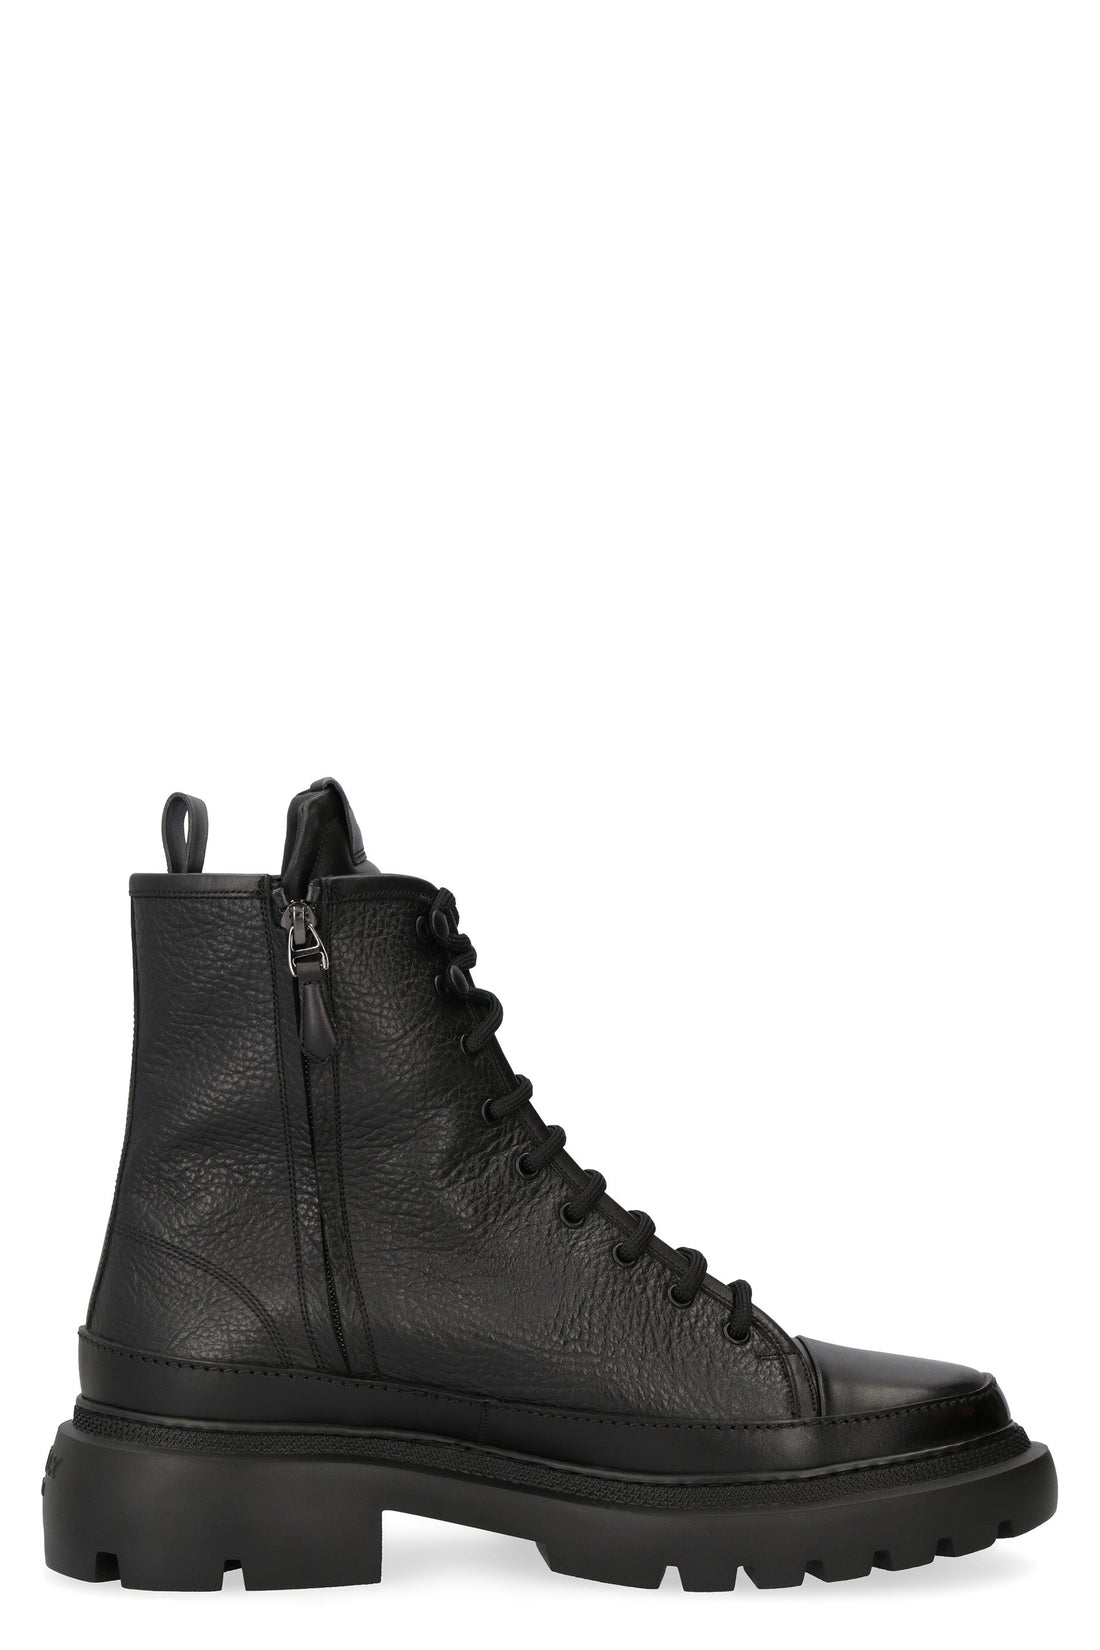 Bally-OUTLET-SALE-Vatiz grainy leather ankle boots-ARCHIVIST